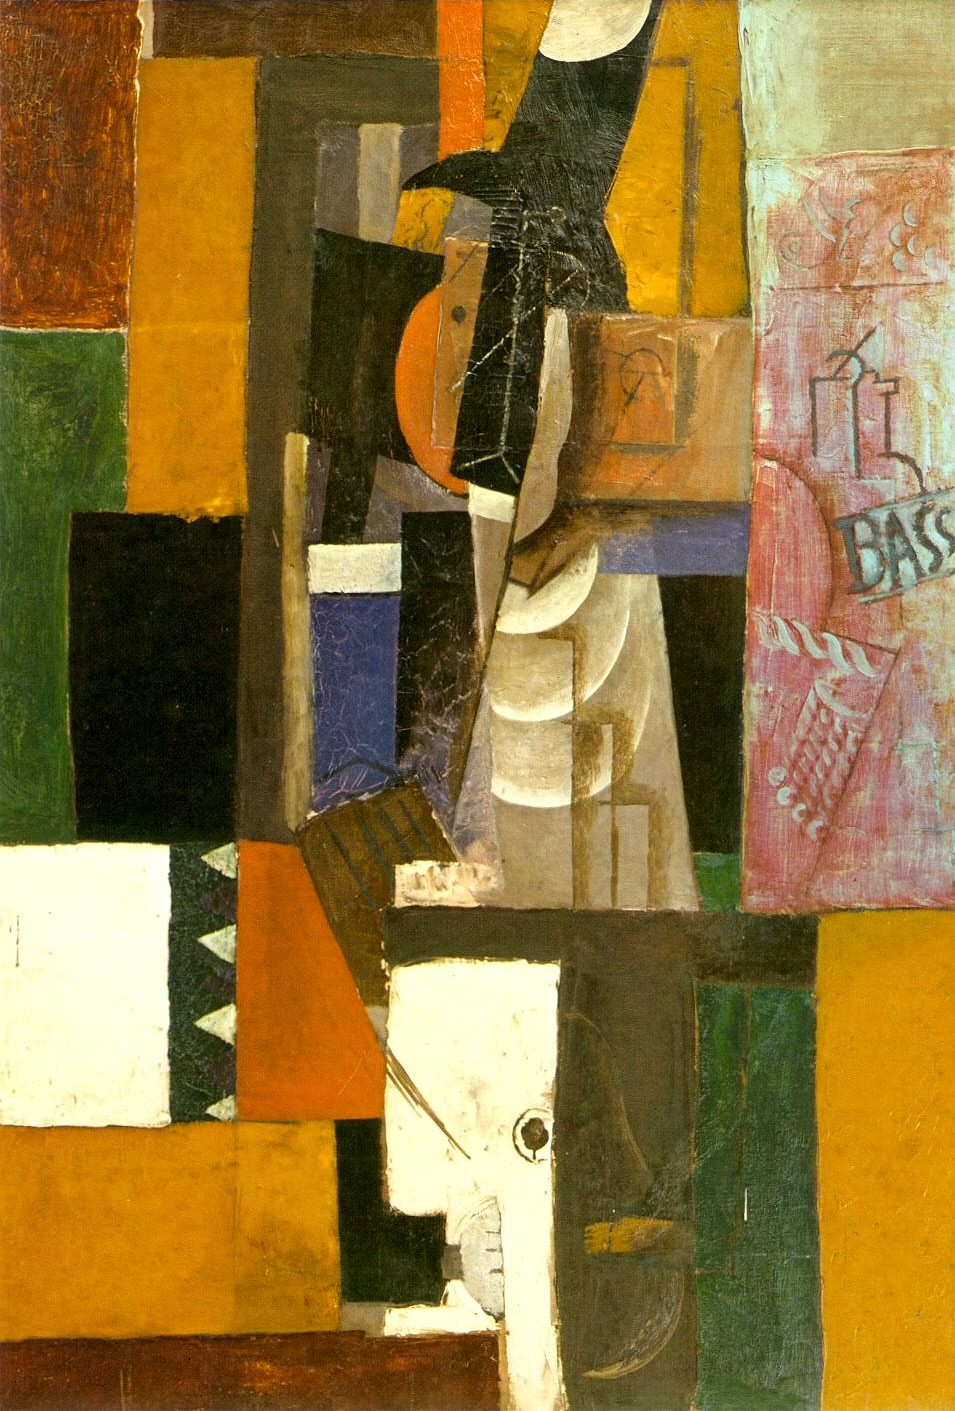 Пабло Пикассо. "Мужчина с гитарой". 1913. Частная коллекция.